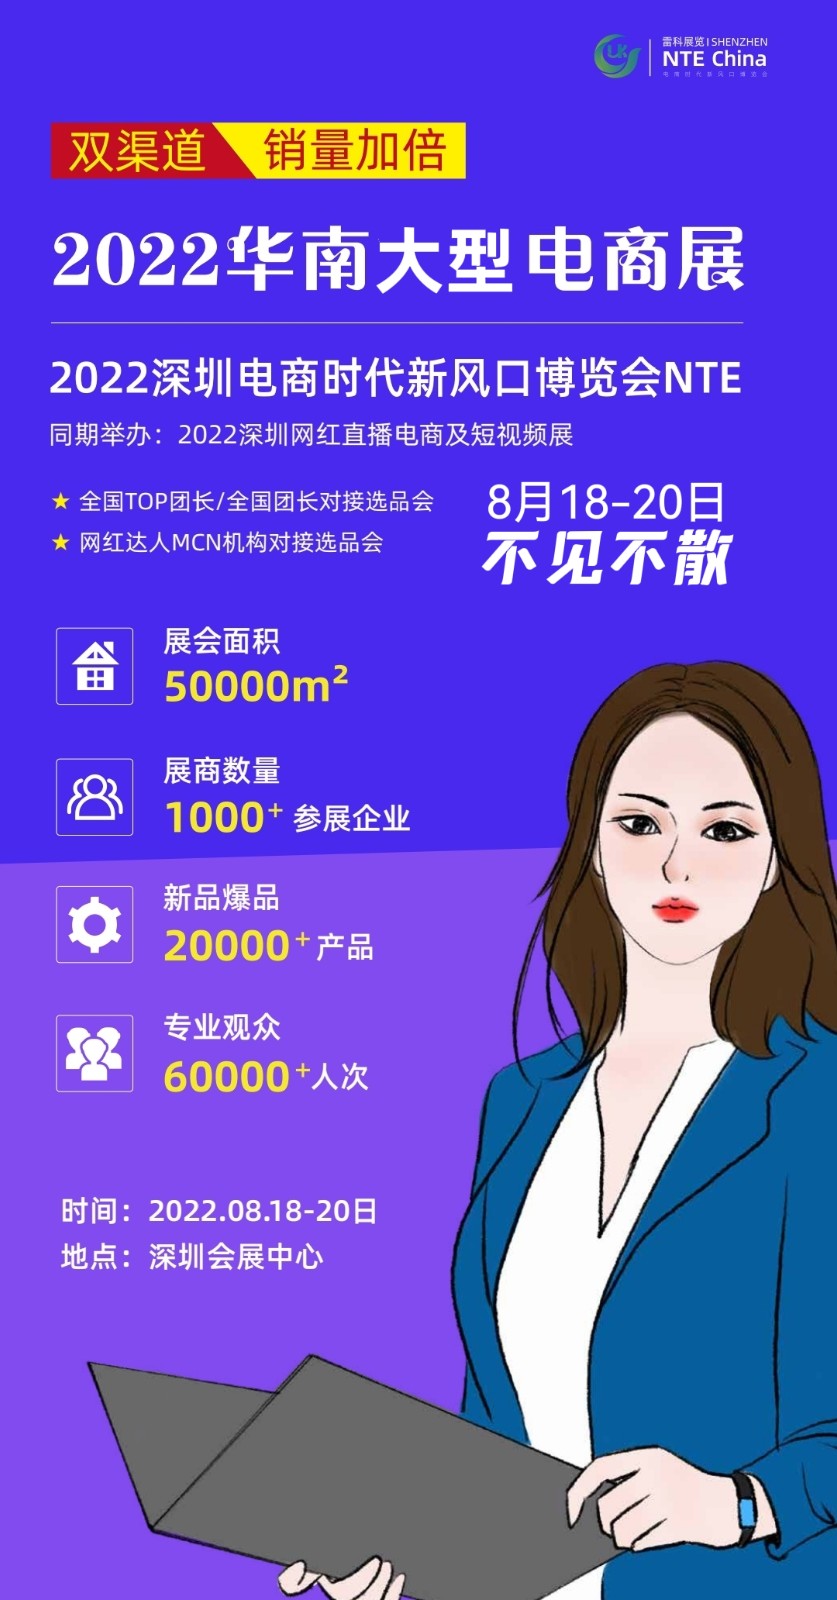 2022深圳电商时代新风口博览会-深圳网红直播电商及短视频展